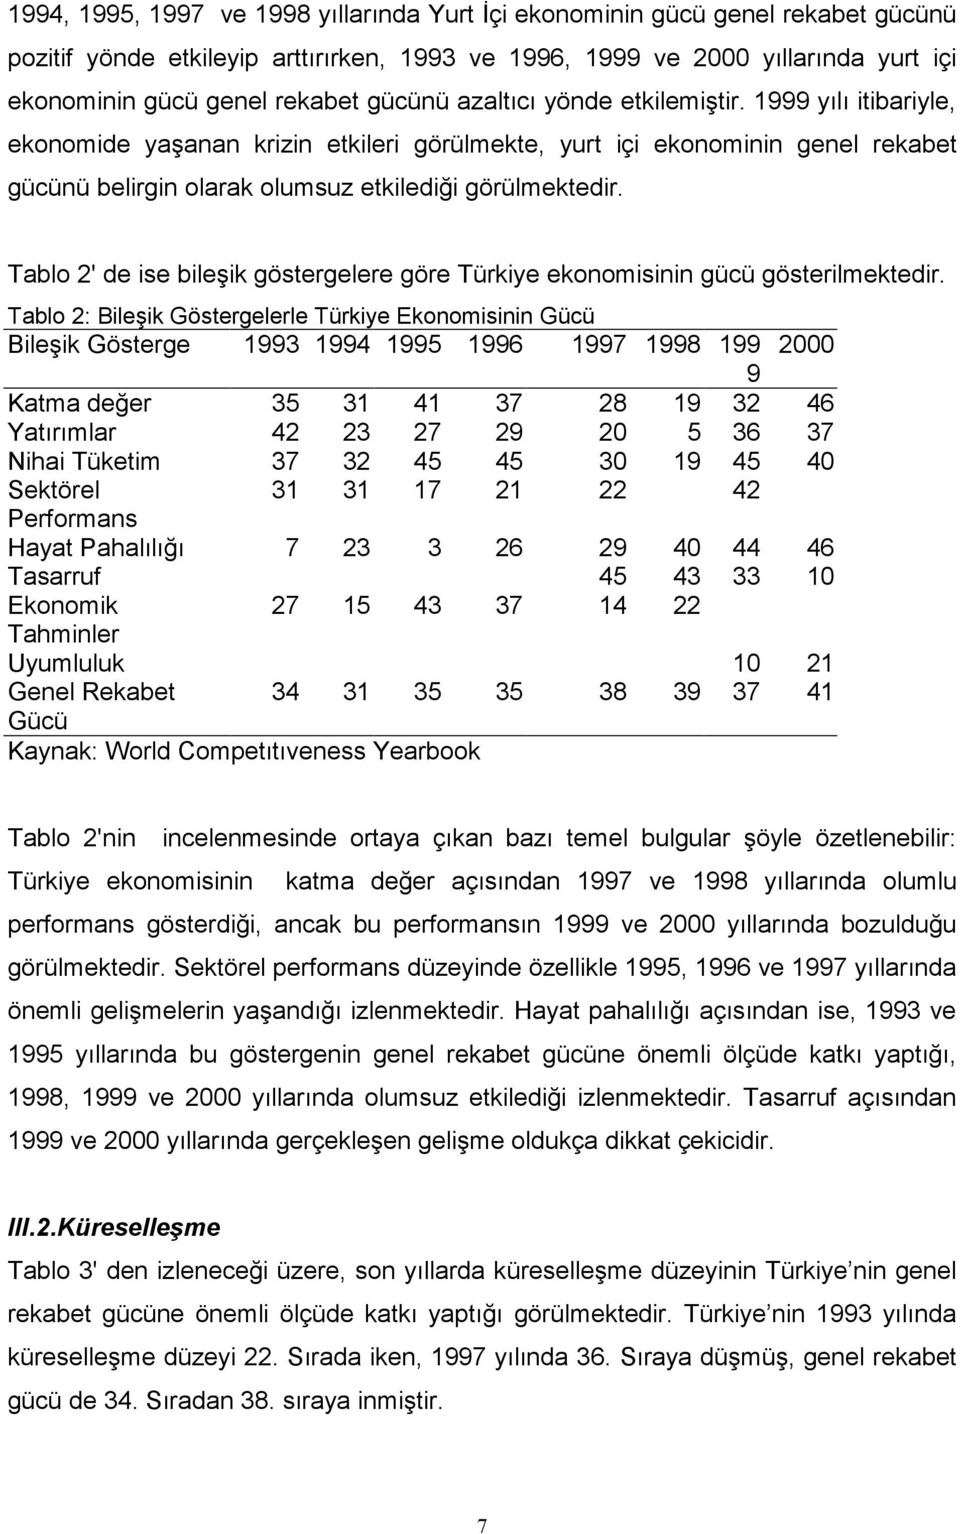 Tablo 2' de ise bileşik göstergelere göre Türkiye ekonomisinin gücü gösterilmektedir.